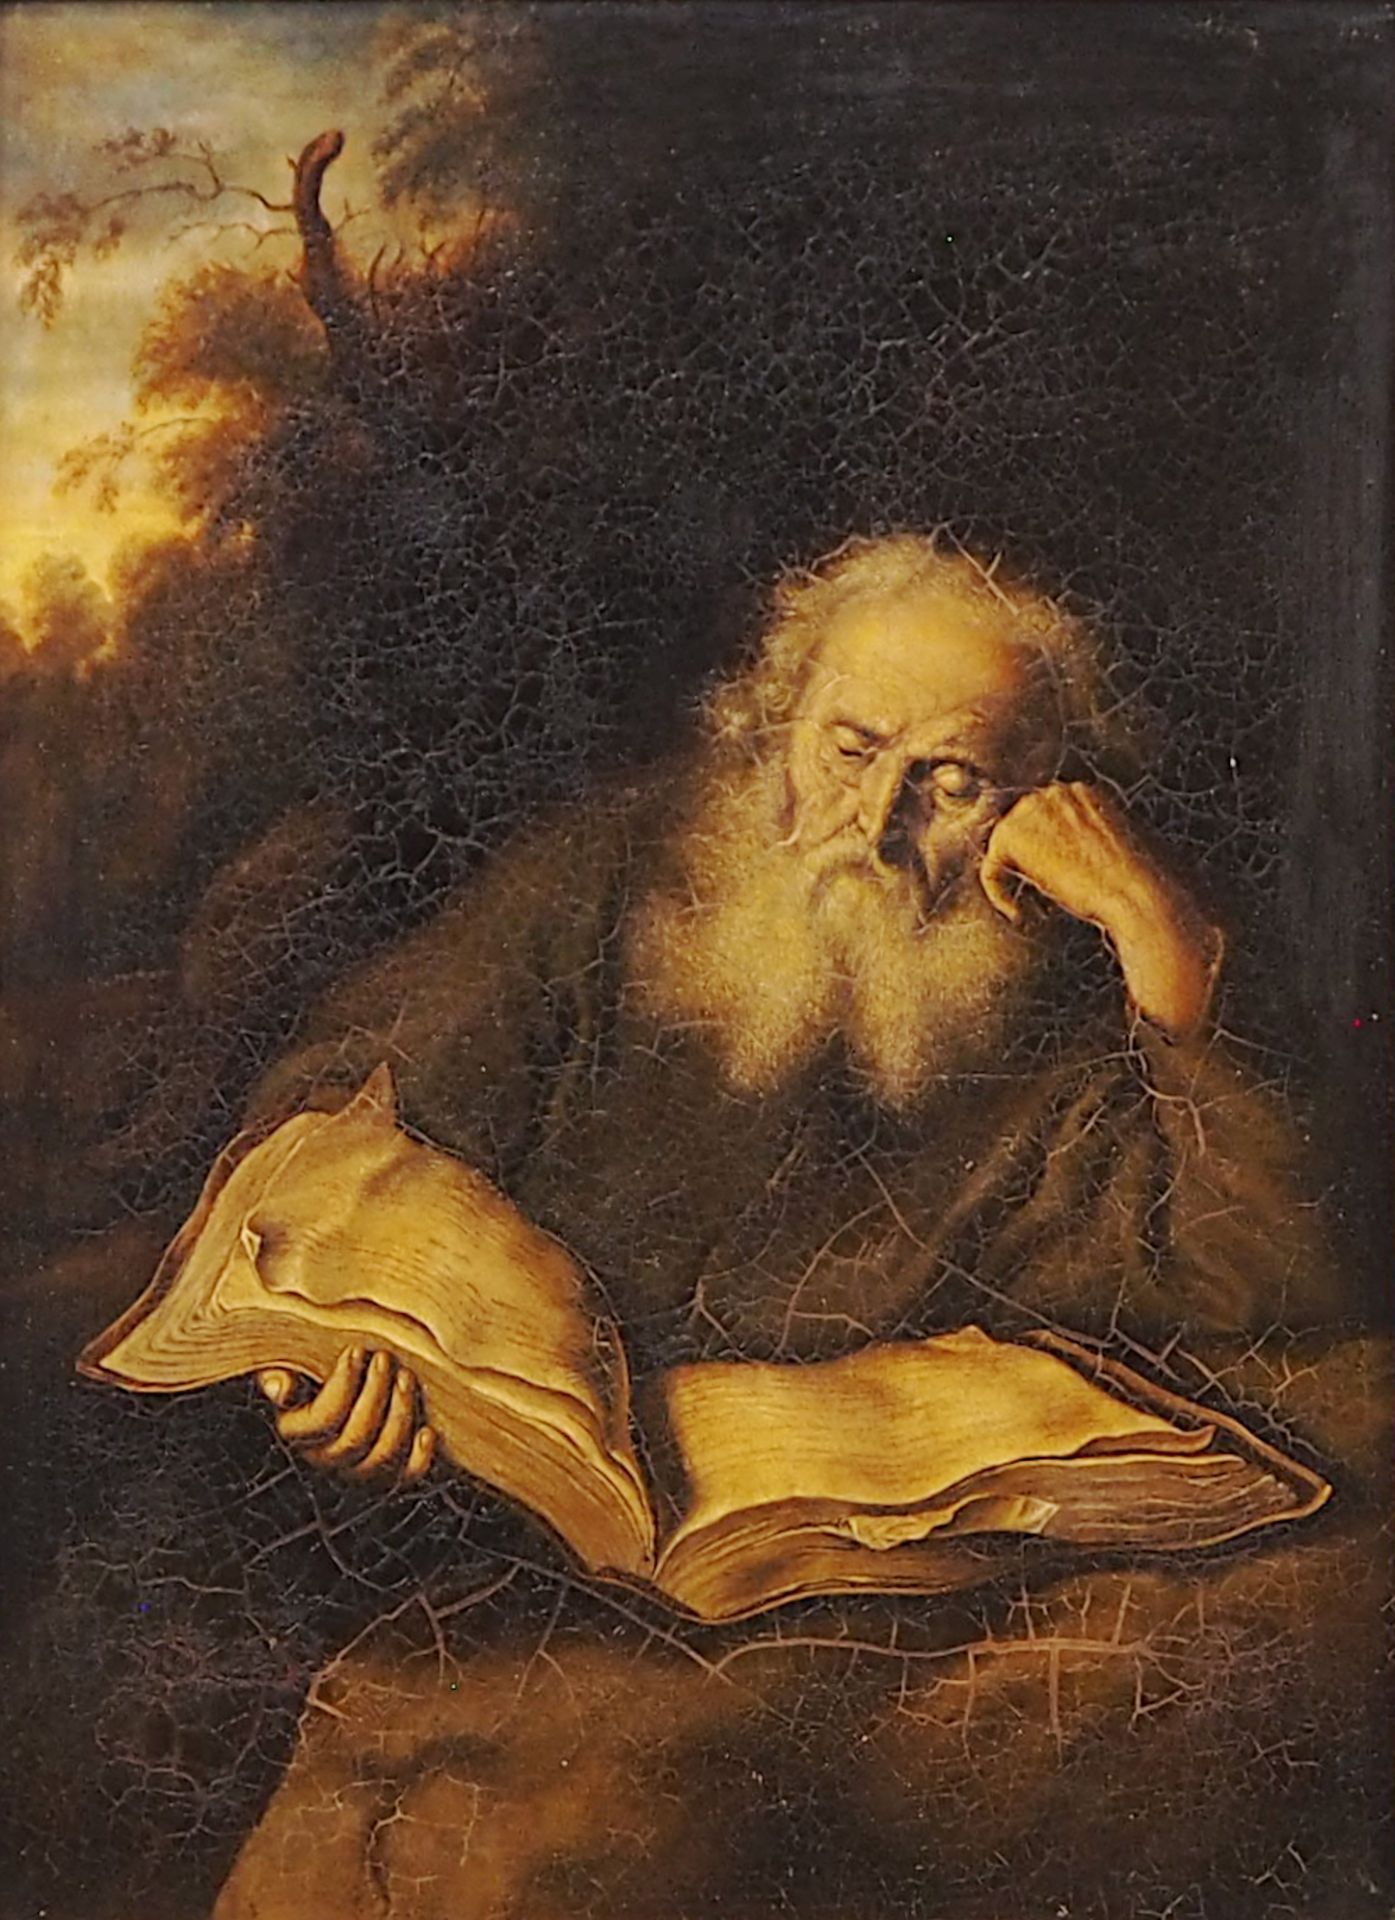 1 Ölgemälde "Der Eremit" unsign., Kopienach Salomon KONINCK (wohl 1609-1656)